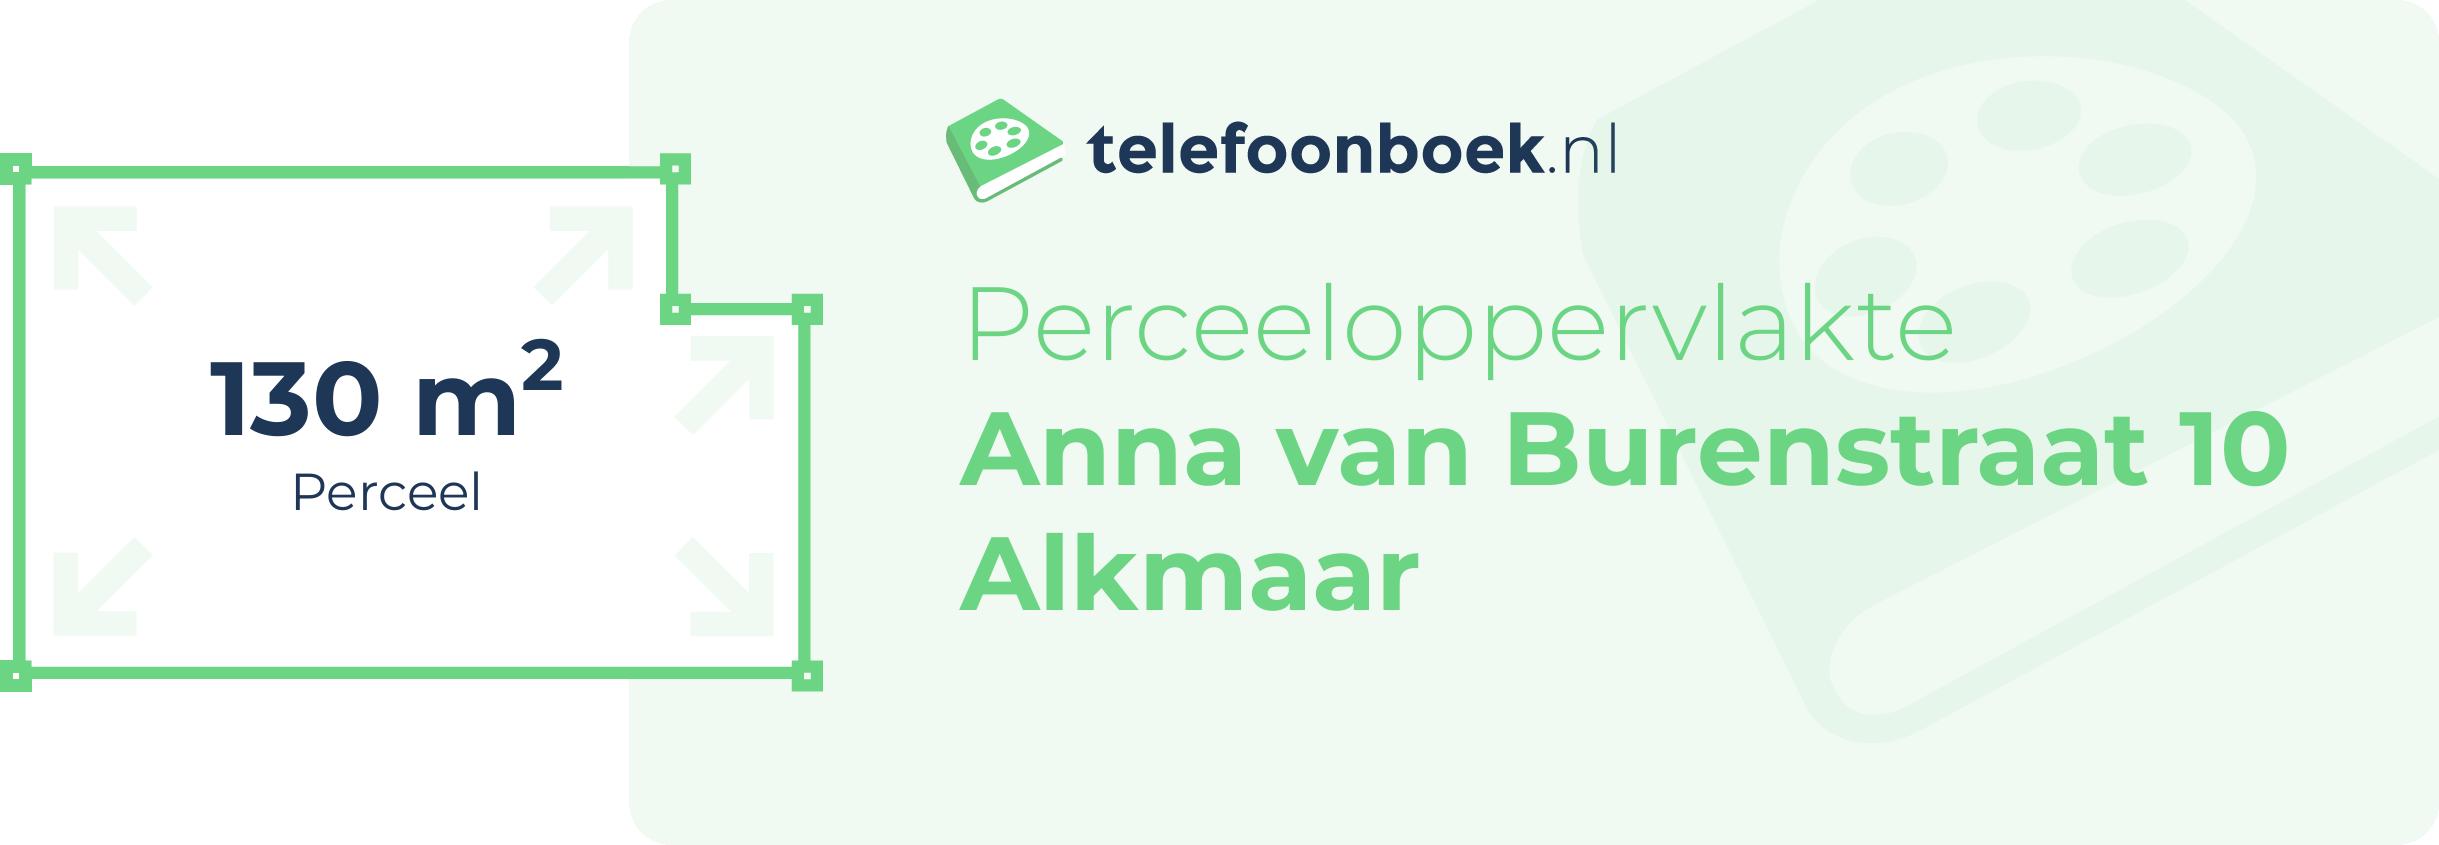 Perceeloppervlakte Anna Van Burenstraat 10 Alkmaar